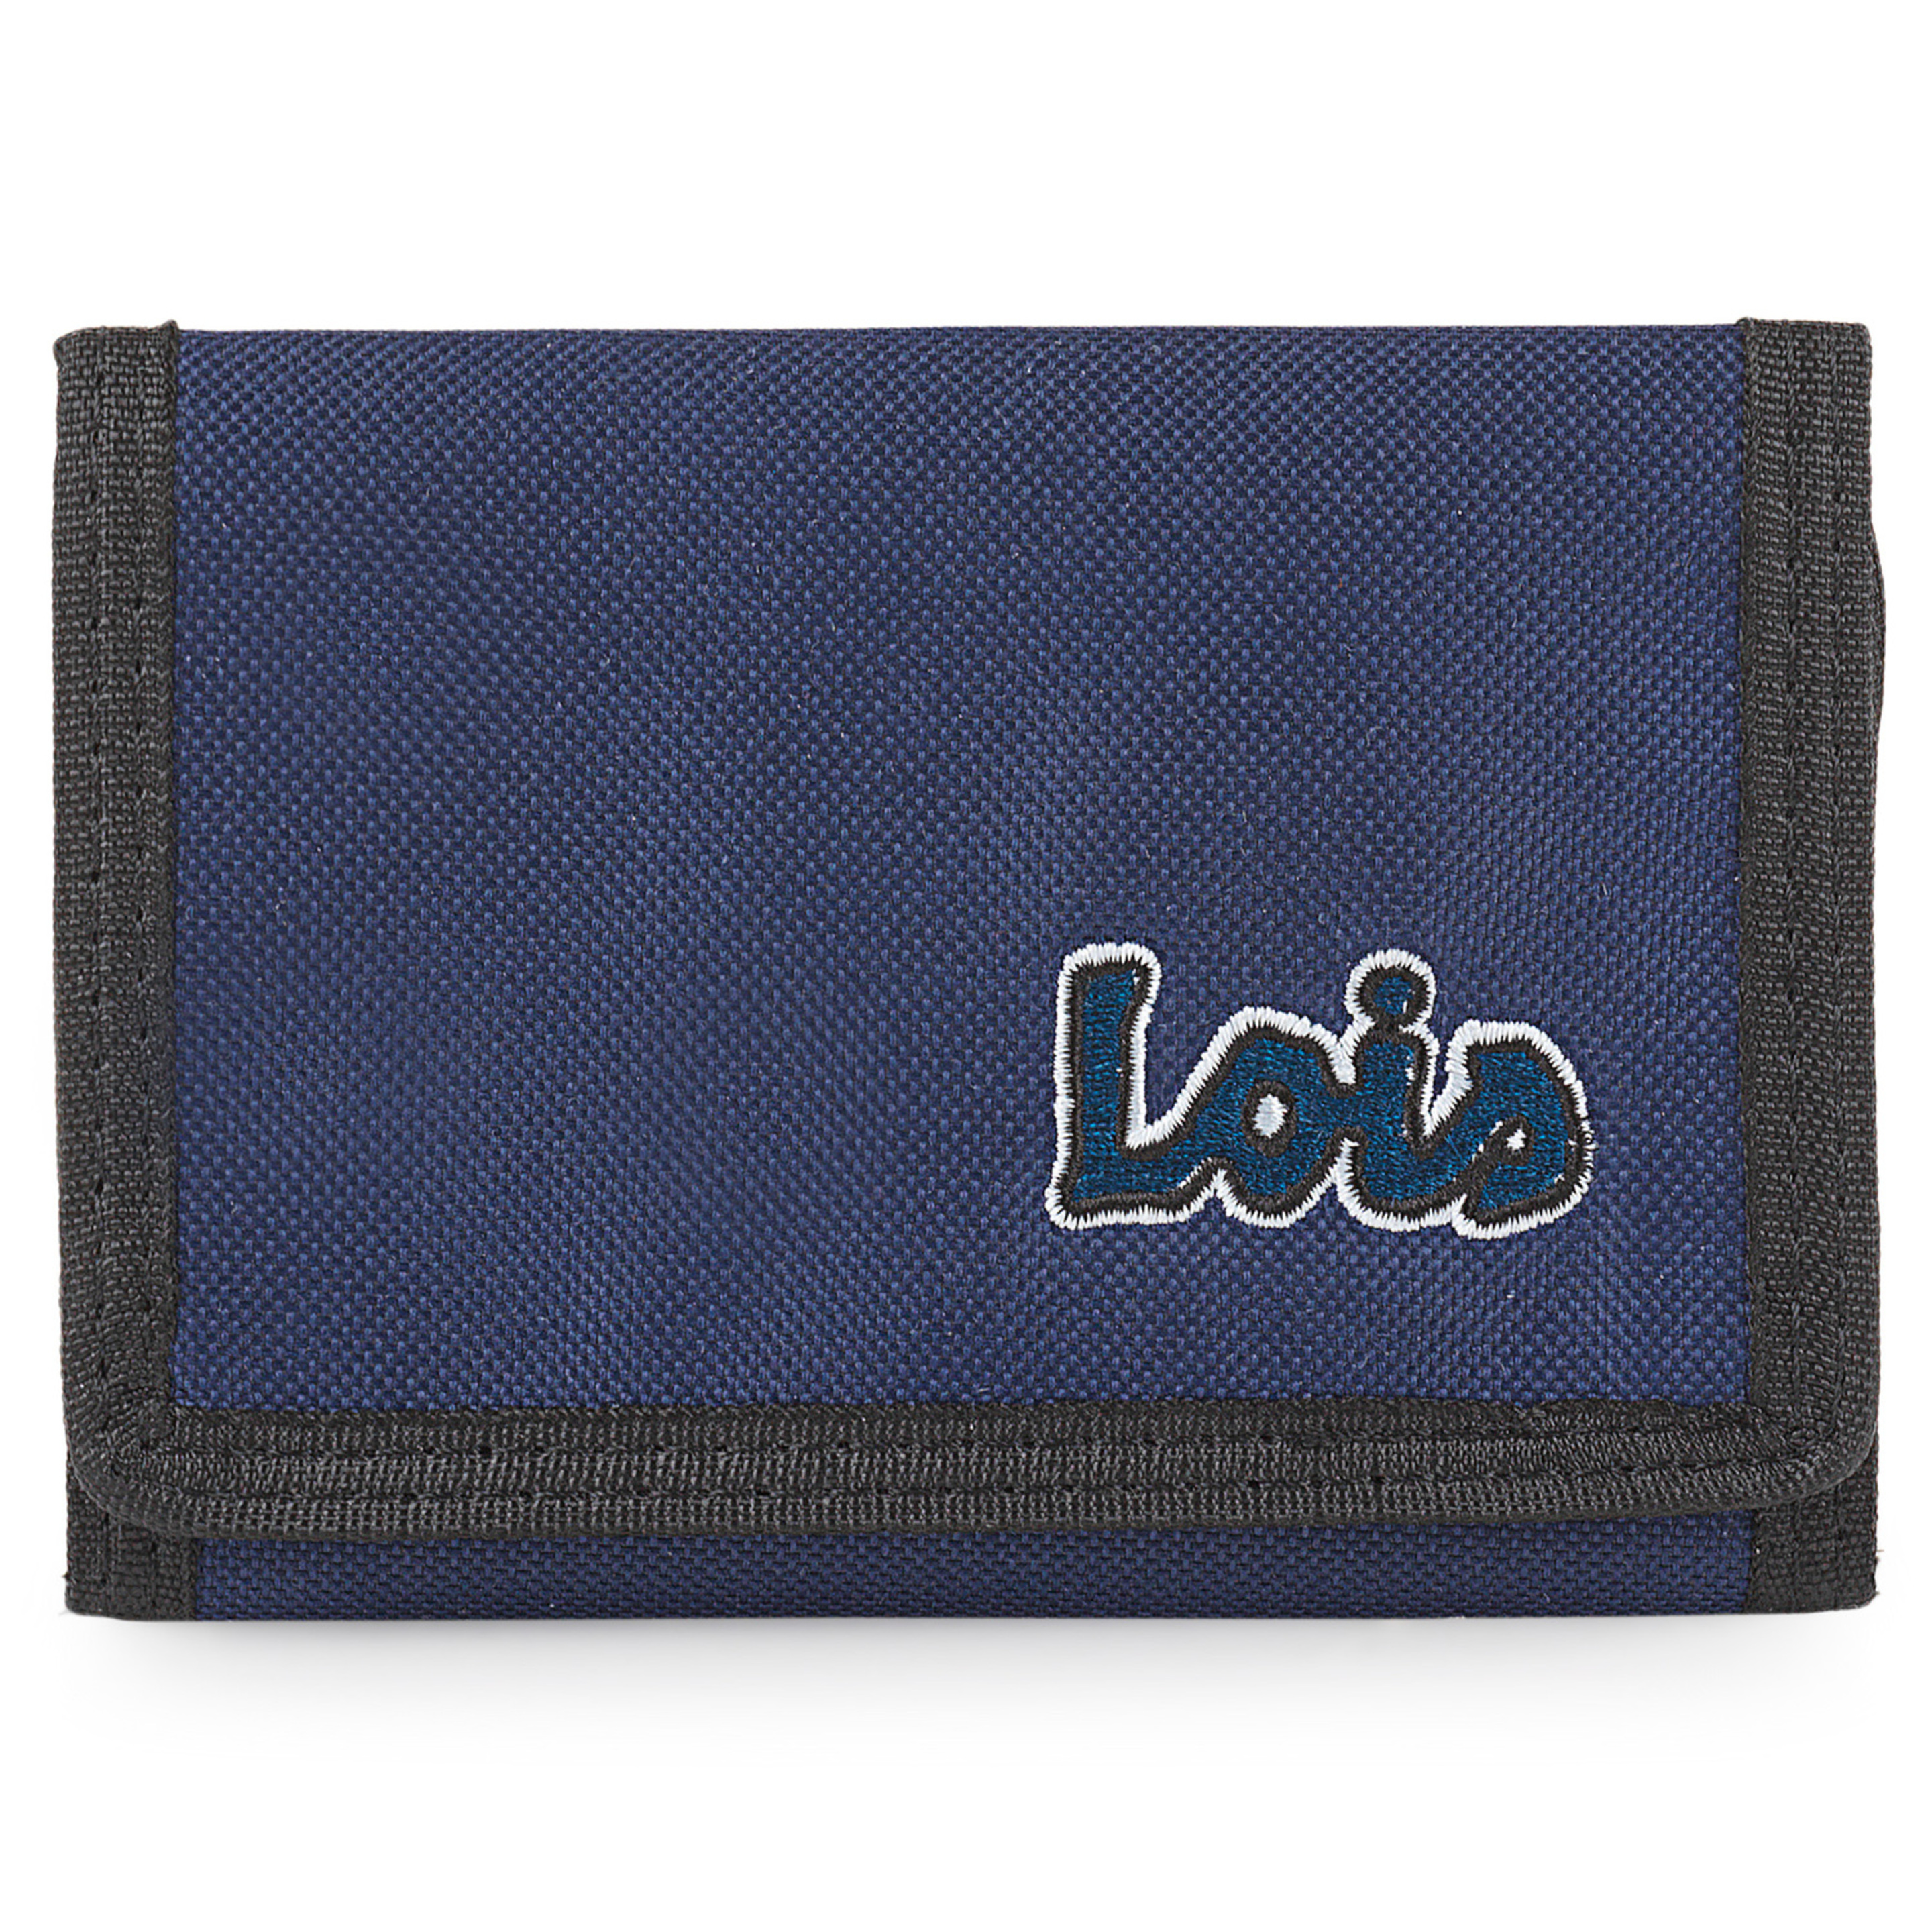 Cartera Velcro Lois Lassen - azul-marino - 